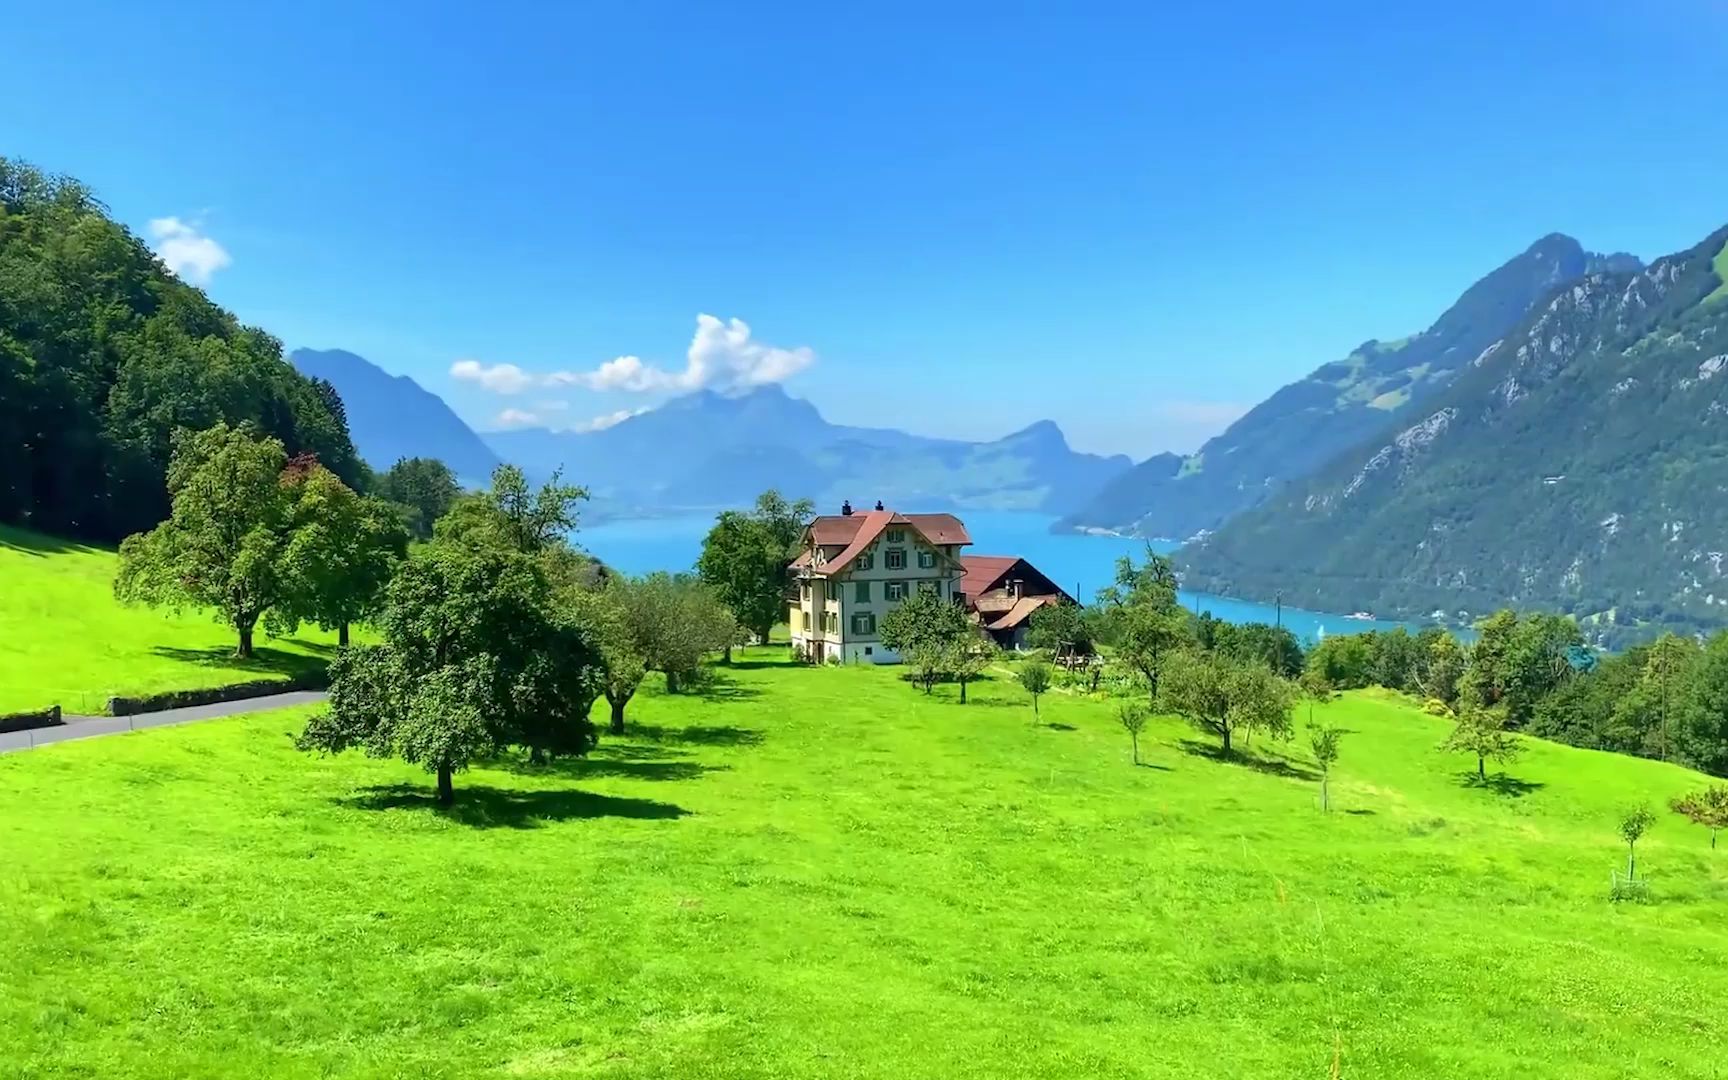 4k超清风景秀美的瑞士小镇塞利斯贝格静谧安静舒缓轻音乐助你放松心情